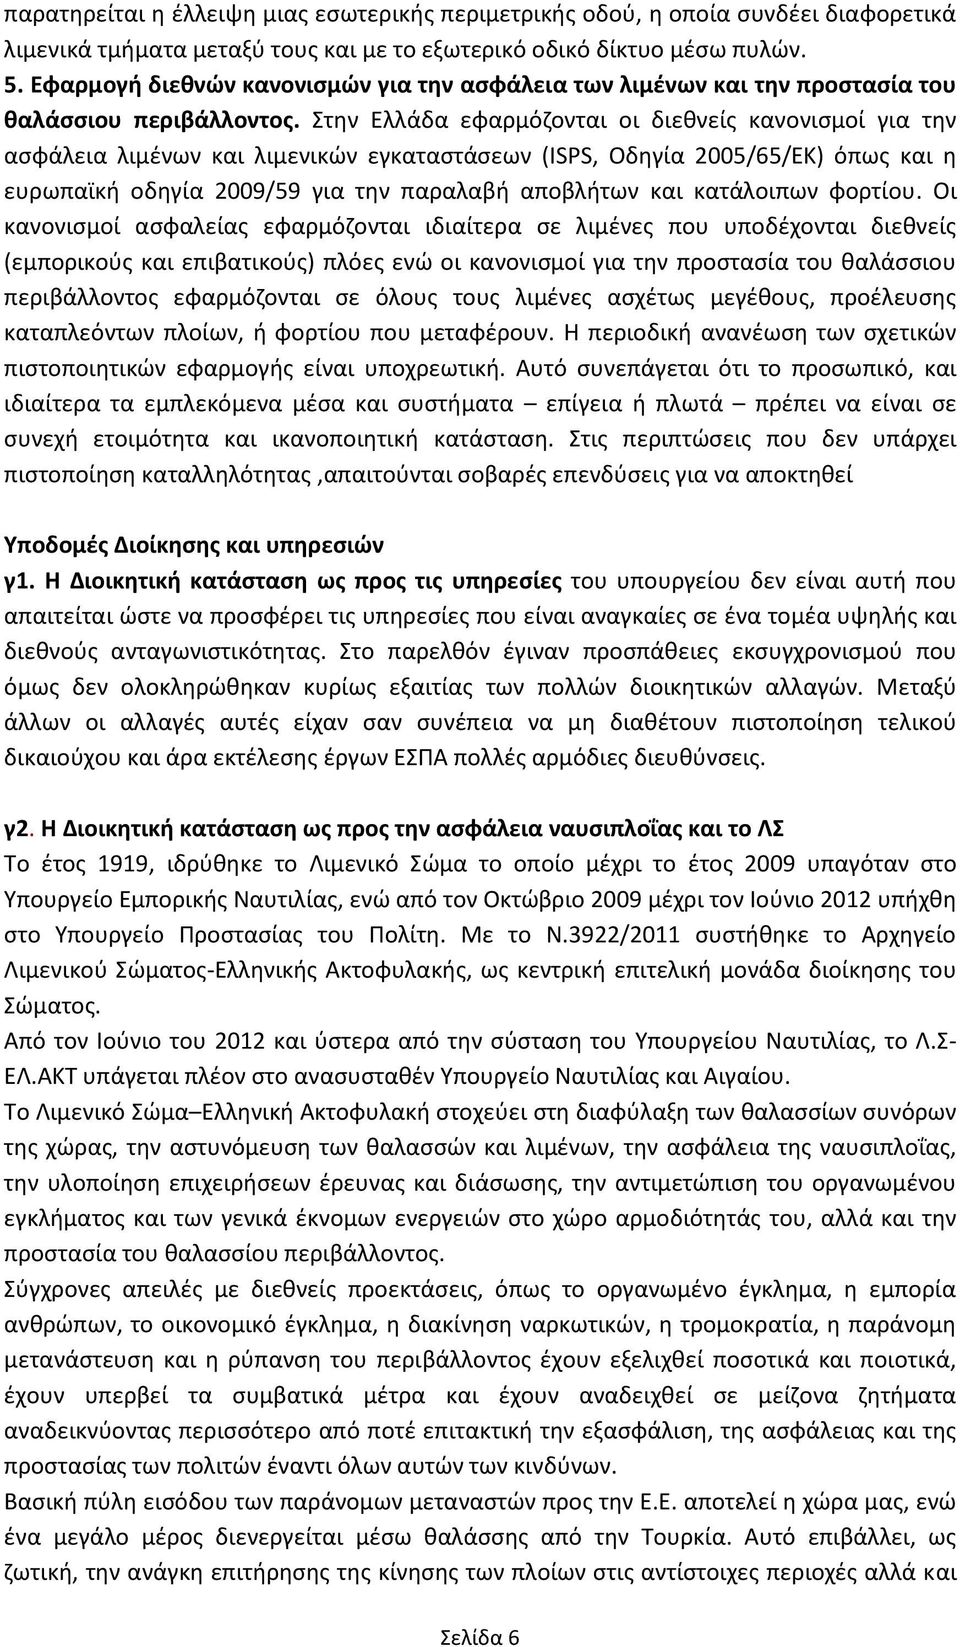 τθν Ελλάδα εφαρμόηονται οι διεκνείσ κανονιςμοί για τθν αςφάλεια λιμζνων και λιμενικϊν εγκαταςτάςεων (ISPS, Οδθγία 2005/65/ΕΚ) όπωσ και θ ευρωπαϊκι οδθγία 2009/59 για τθν παραλαβι αποβλιτων και